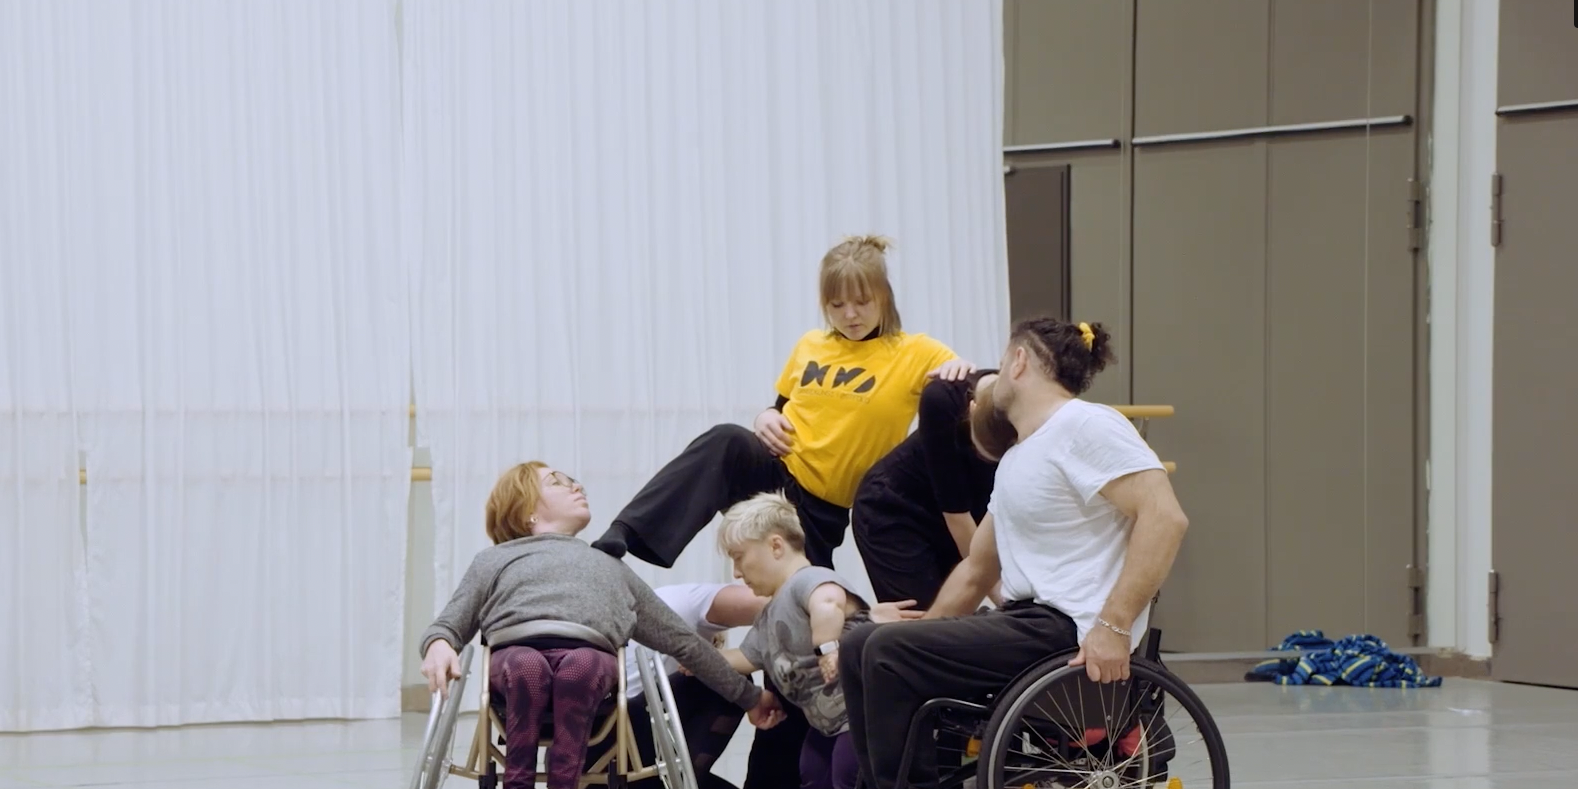 Bilder föreställer fem stycken dansare i en dansstudio som står tätt tillsammans. Tre av dem står upp, två sitter i rullstol. De tittar alla åt olika håll.